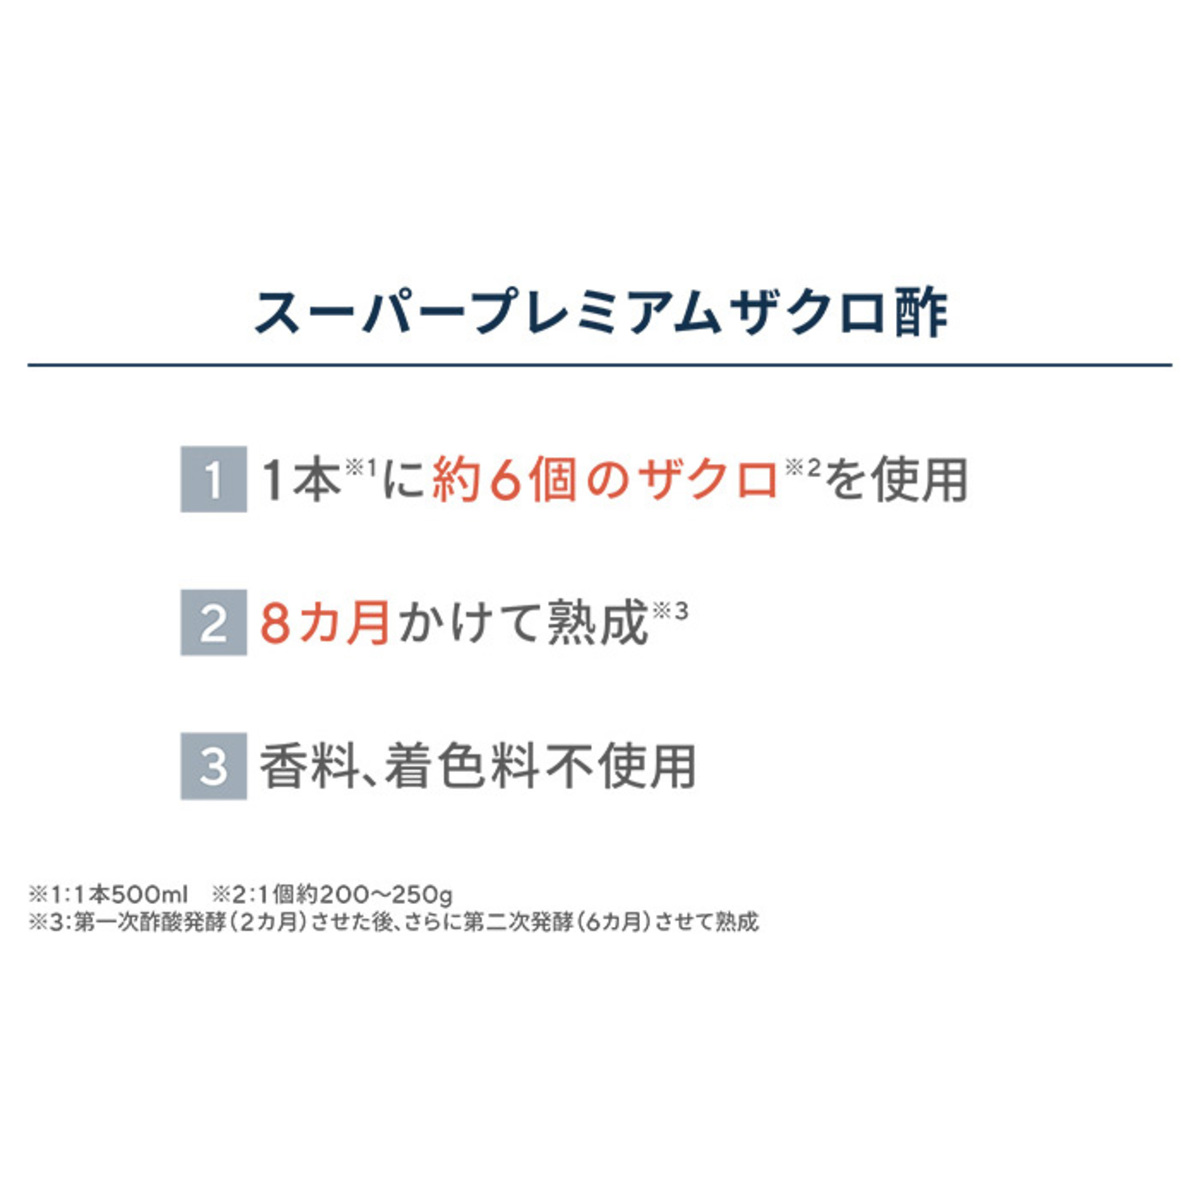 プロが選んだスーパープレミアムザクロ酢8本セット - QVC.jp